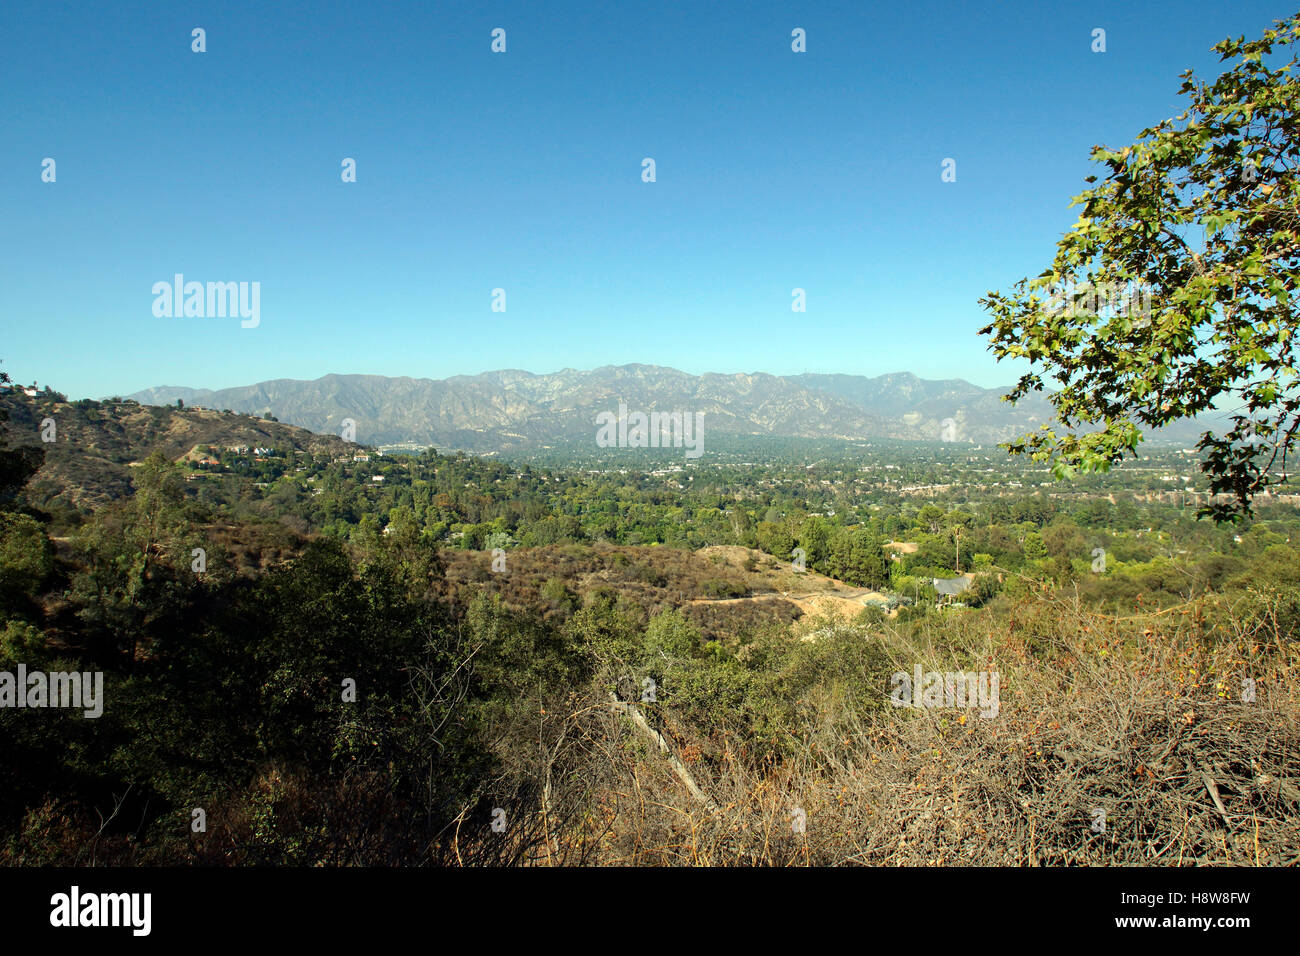 Un grand angle de vue des montagnes de San Gabriel vu de Pasadena, CA Banque D'Images